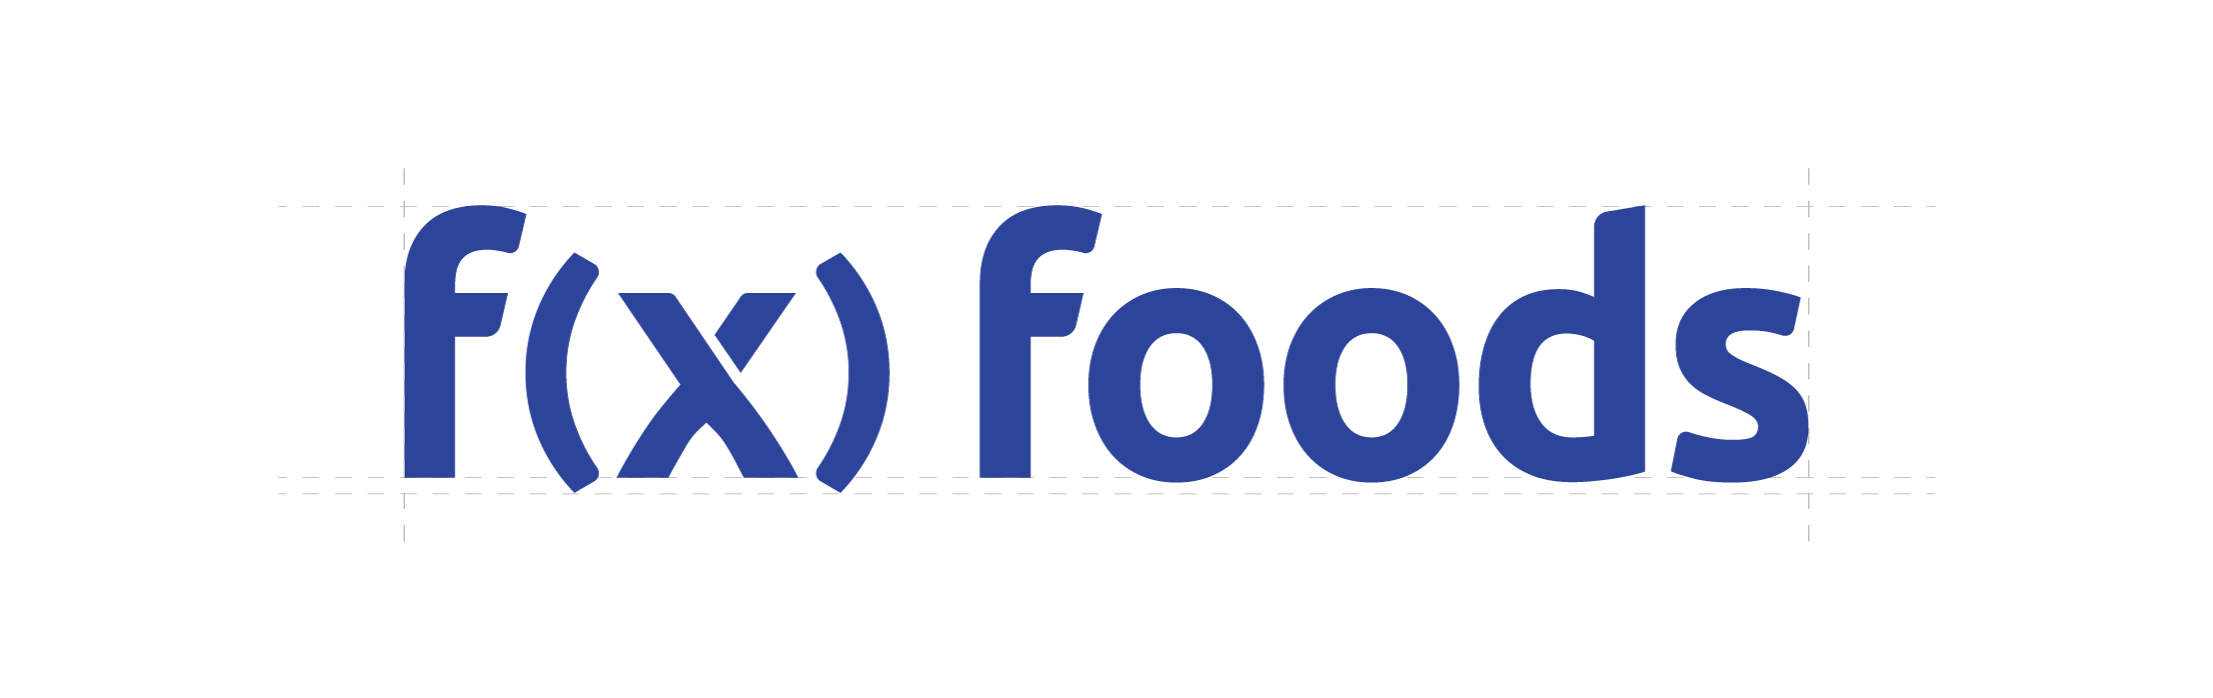 fxFoods_Logo3